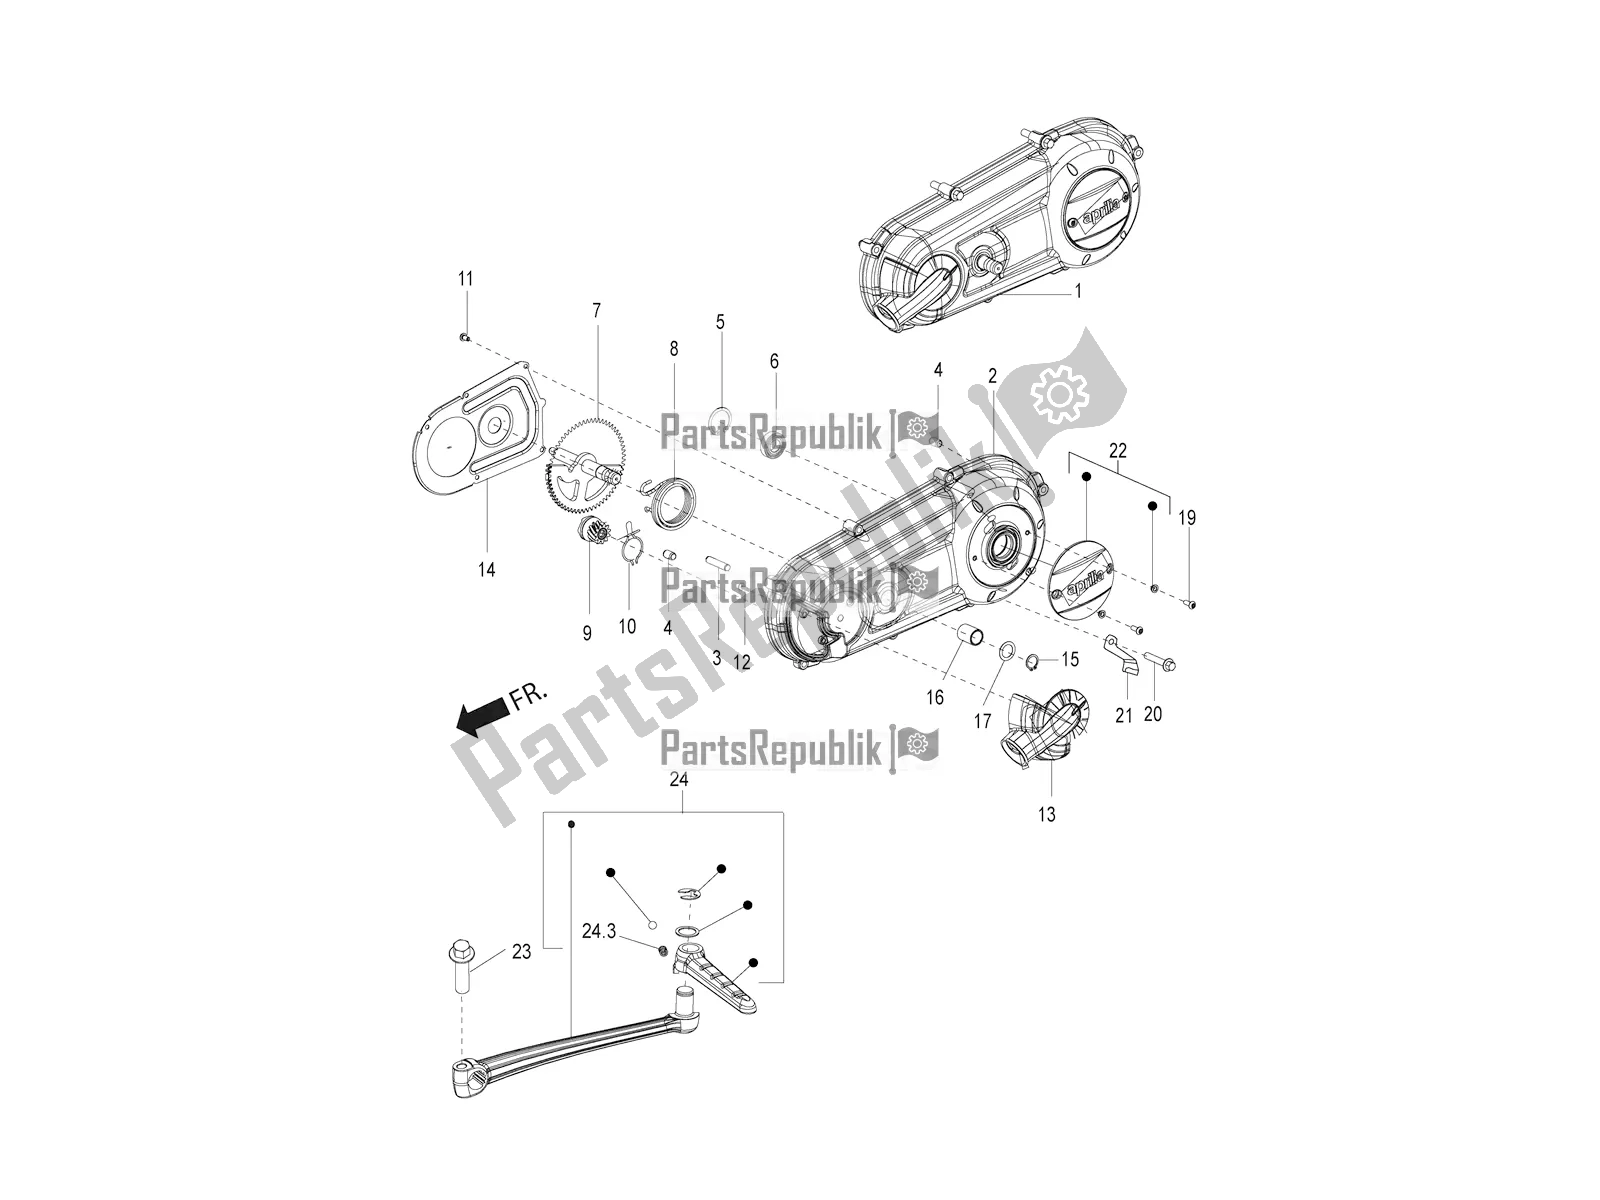 Alle onderdelen voor de Transmissie Deksel van de Aprilia SR Motard 150 ABS Racer Carb. Latam 2018